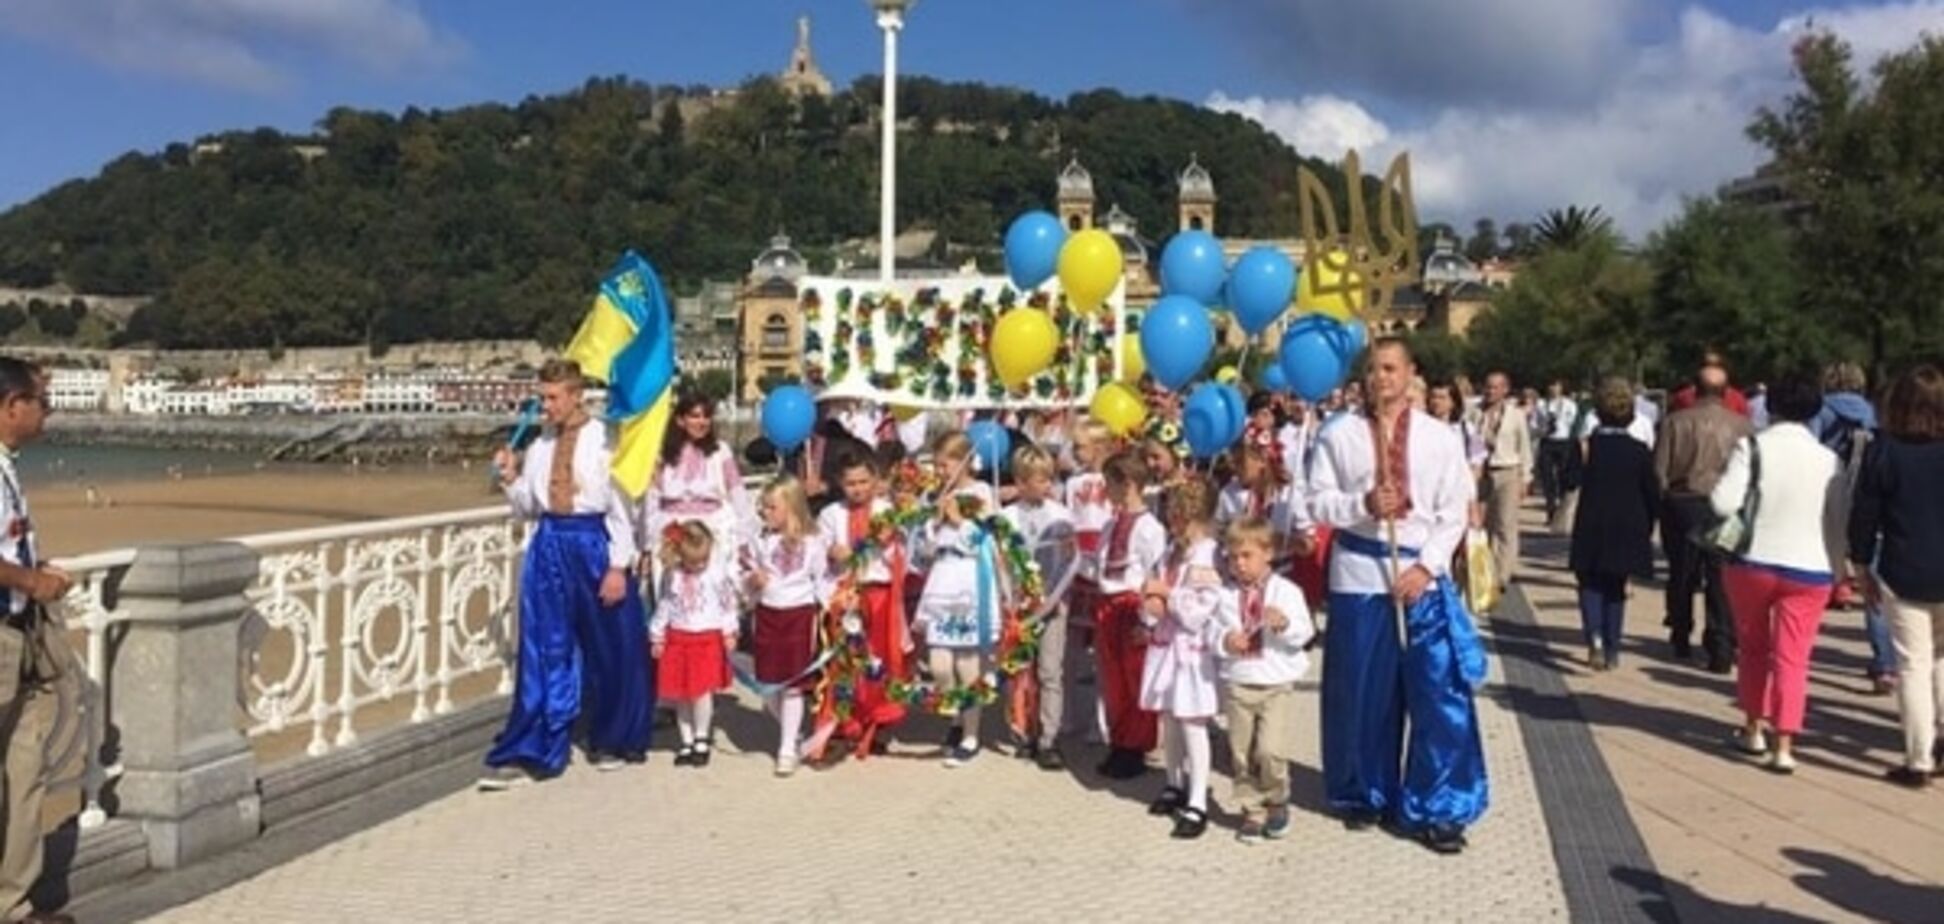 С миром и любовью. Украинцы в Испании провели яркий Марш вышиванок: опубликованы фото